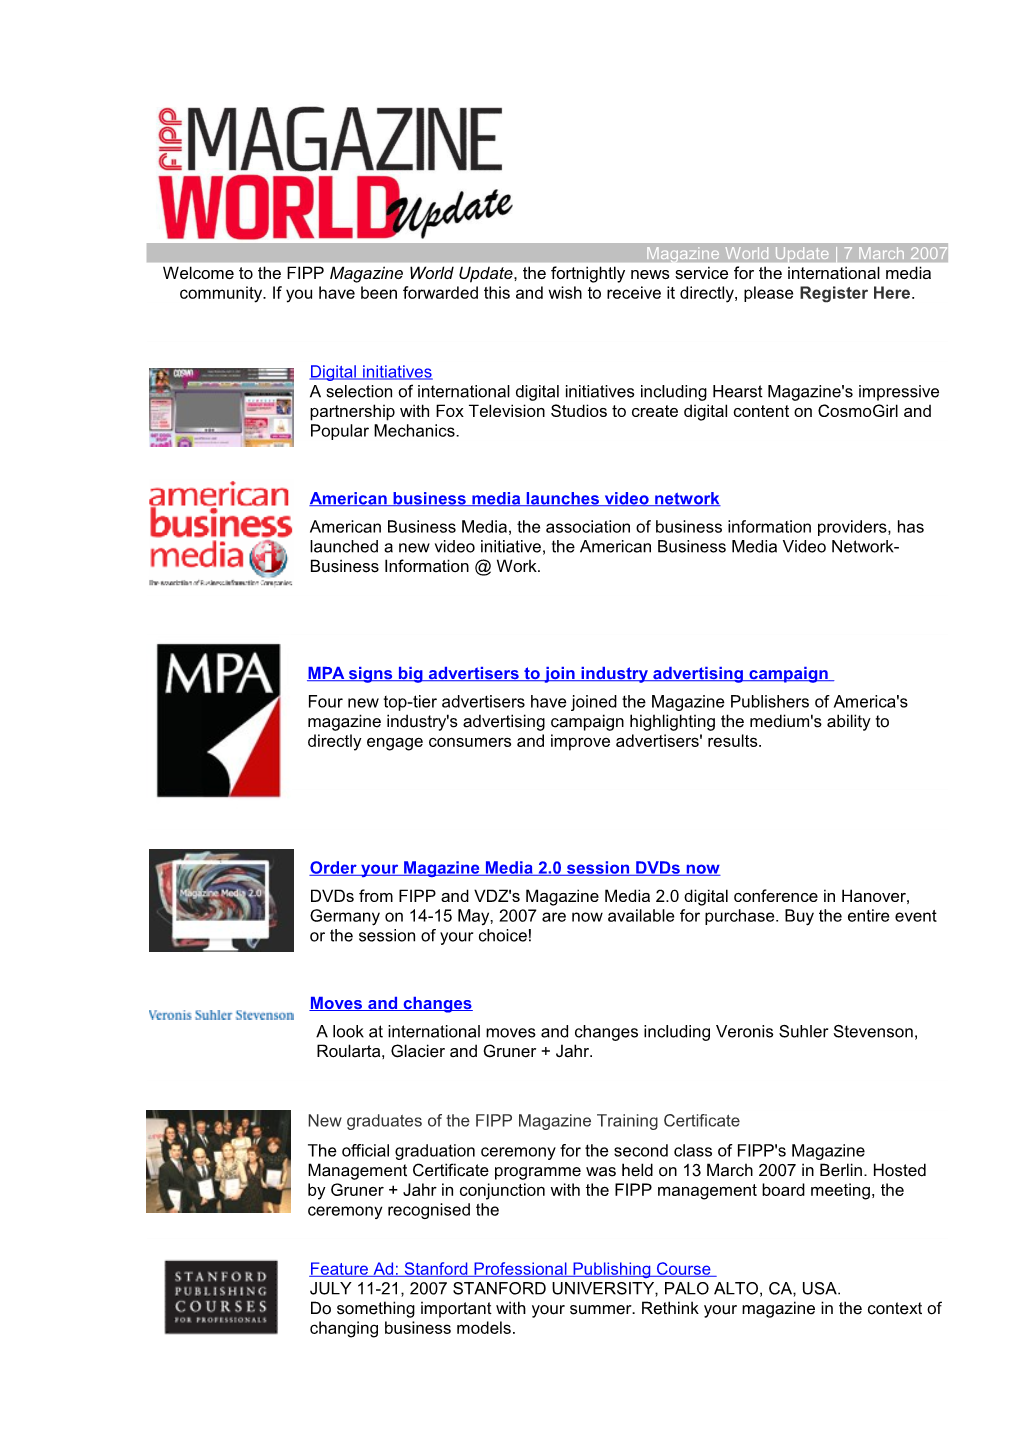 Magazine World Update 7 March 2007